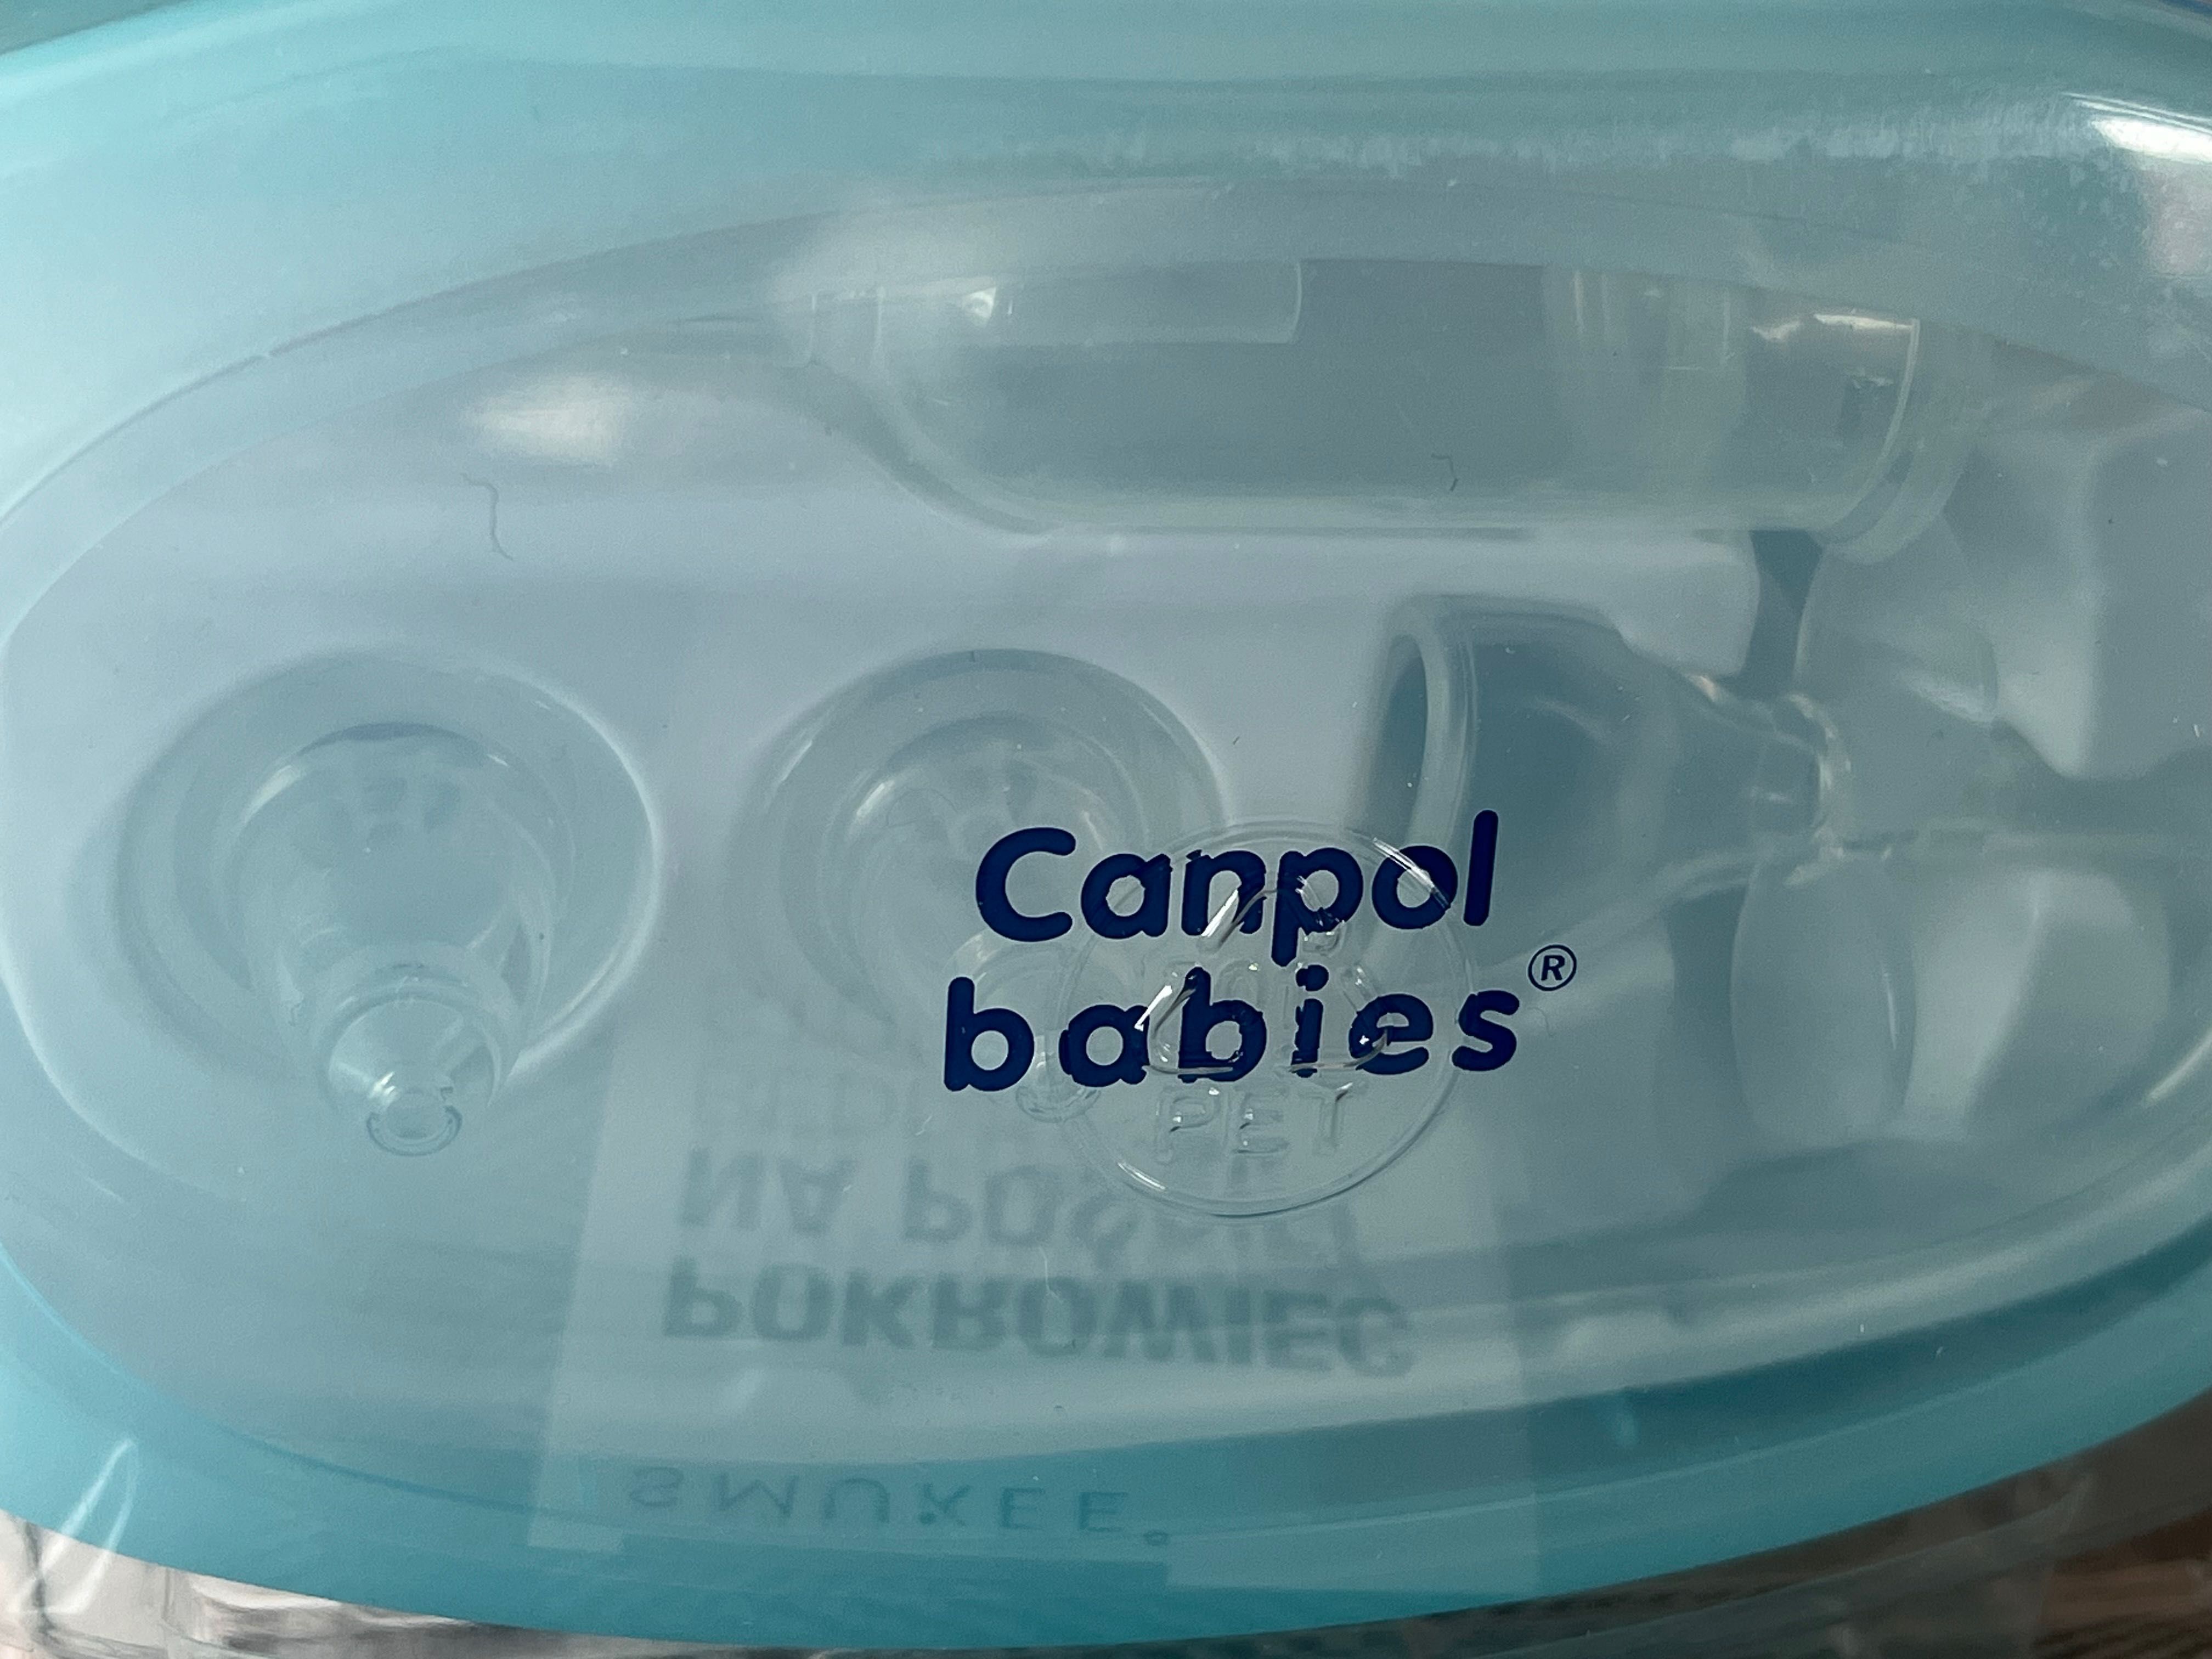 Canpol Babies, aspirator do nosa dla dzieci + etui